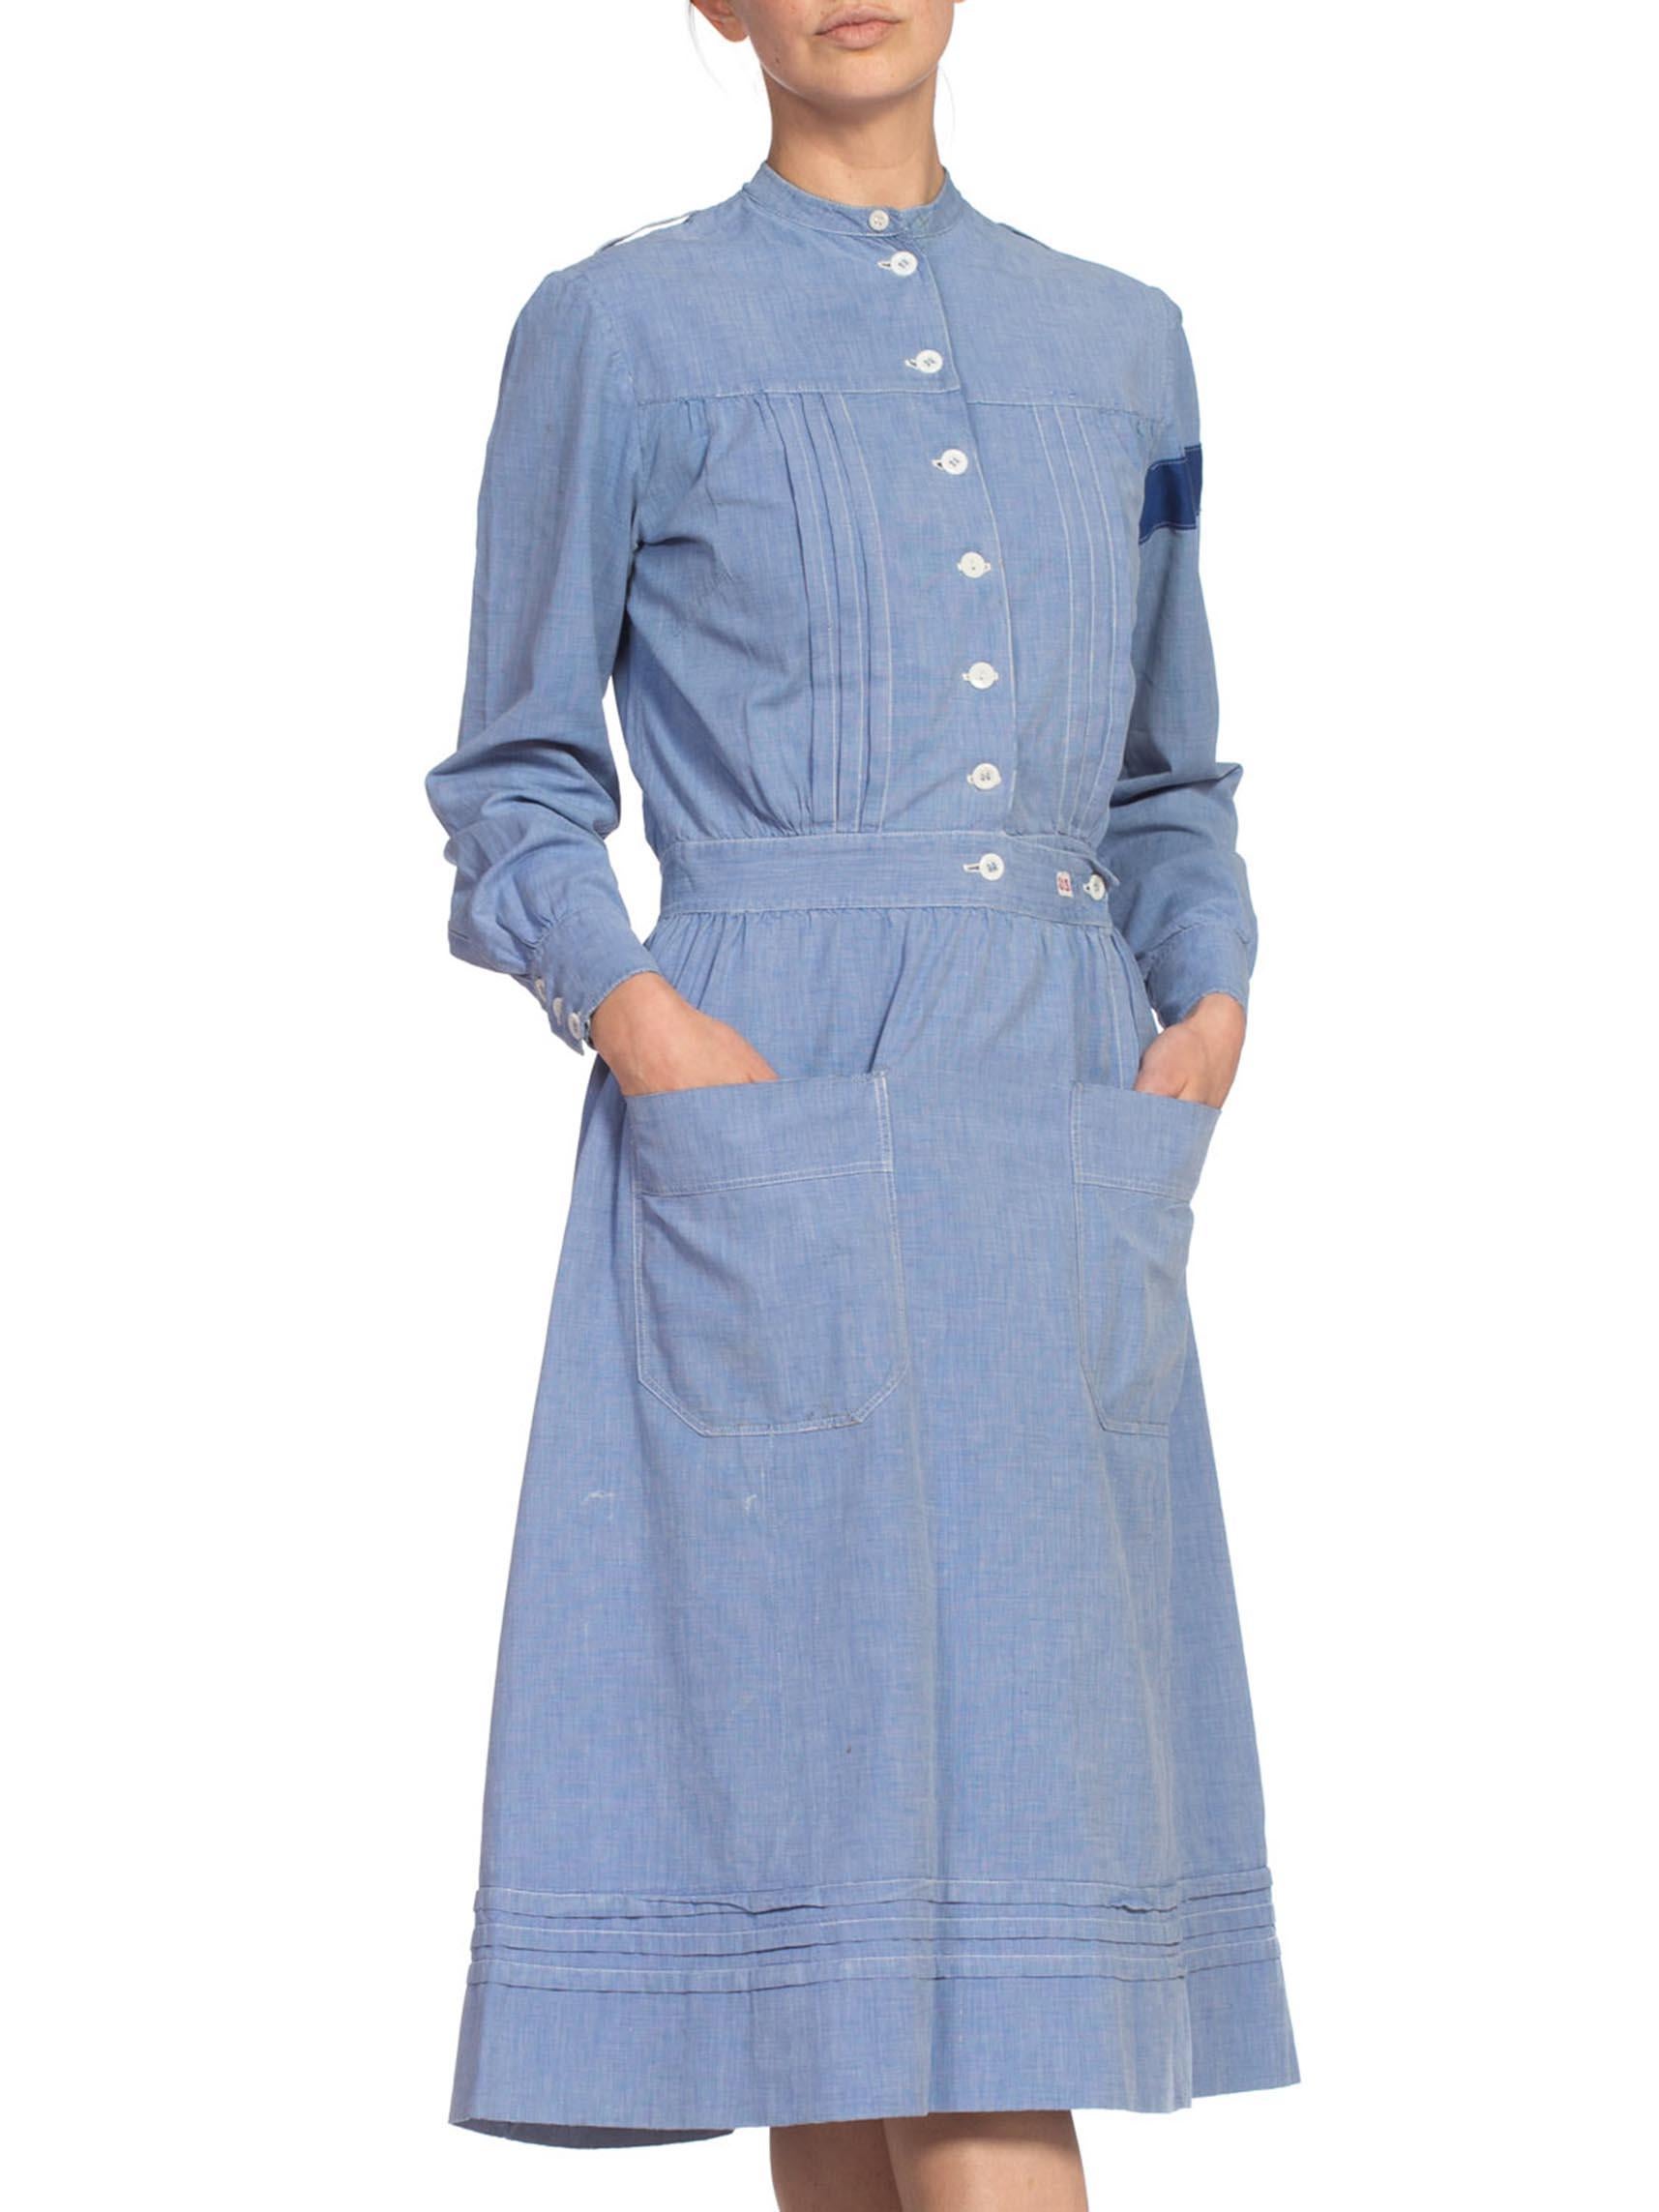 Purple Edwardian Cotton Chambray WWI Authentic War Nurse Uniform Dress For Sale